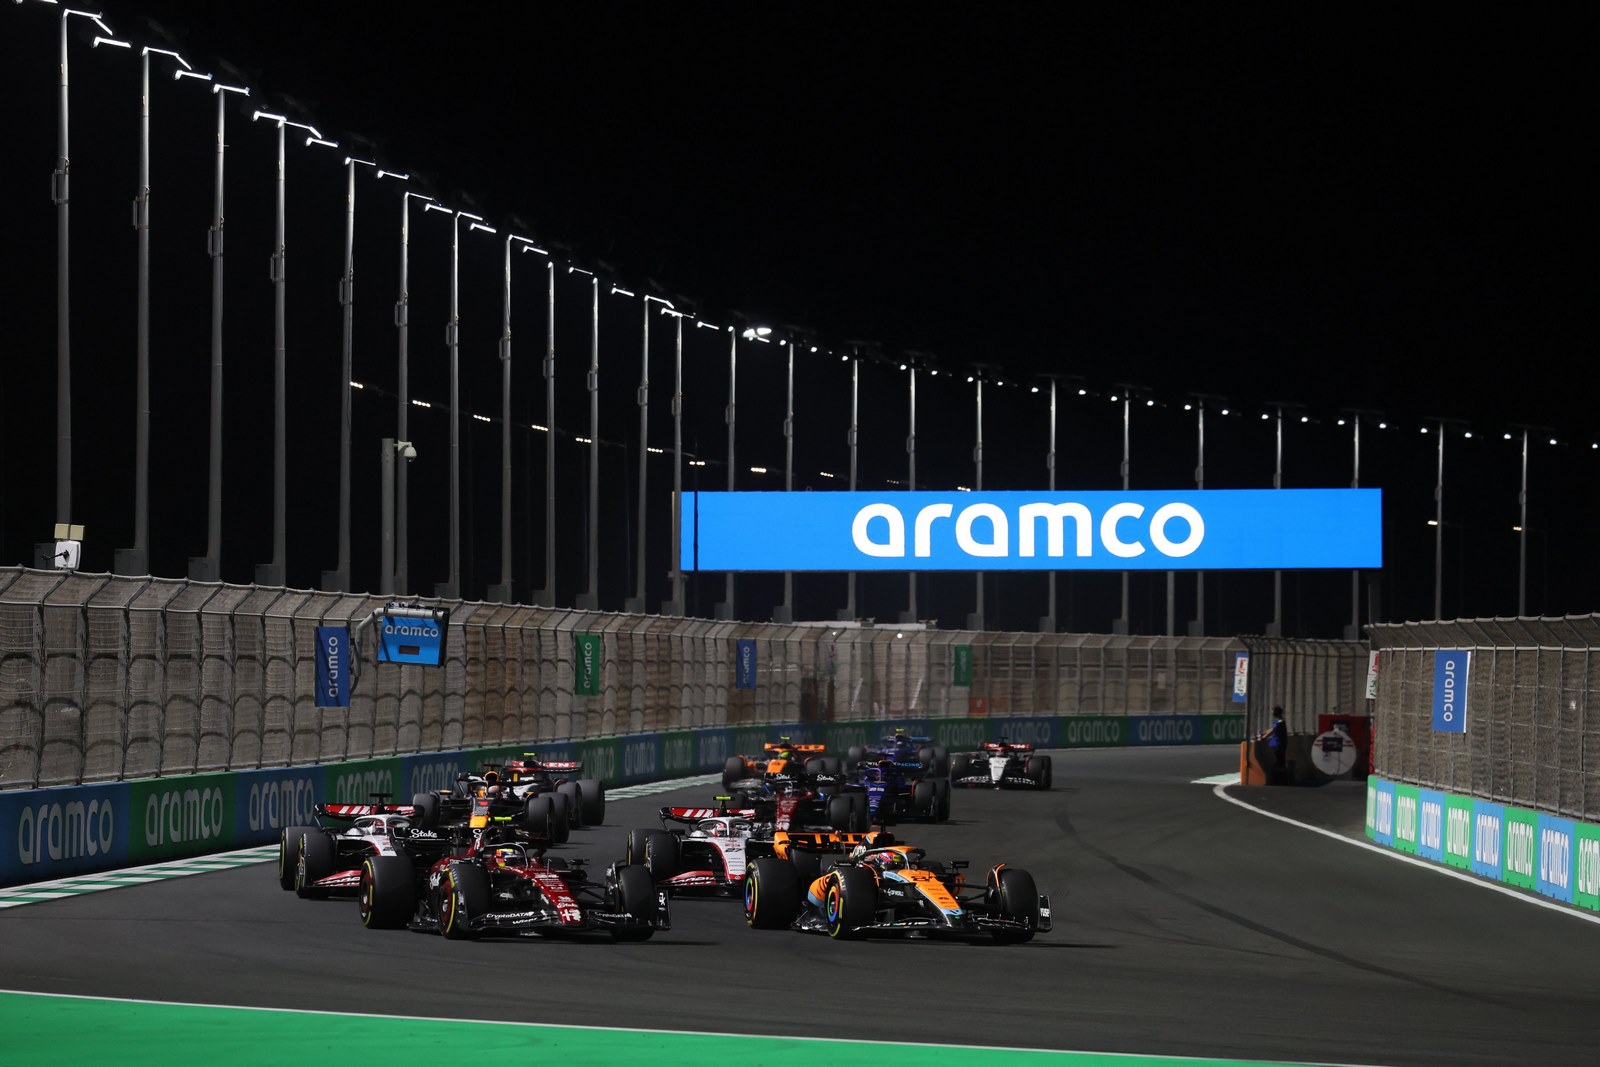 Les McLaren dans le peloton au GP d'Arabie saoudite